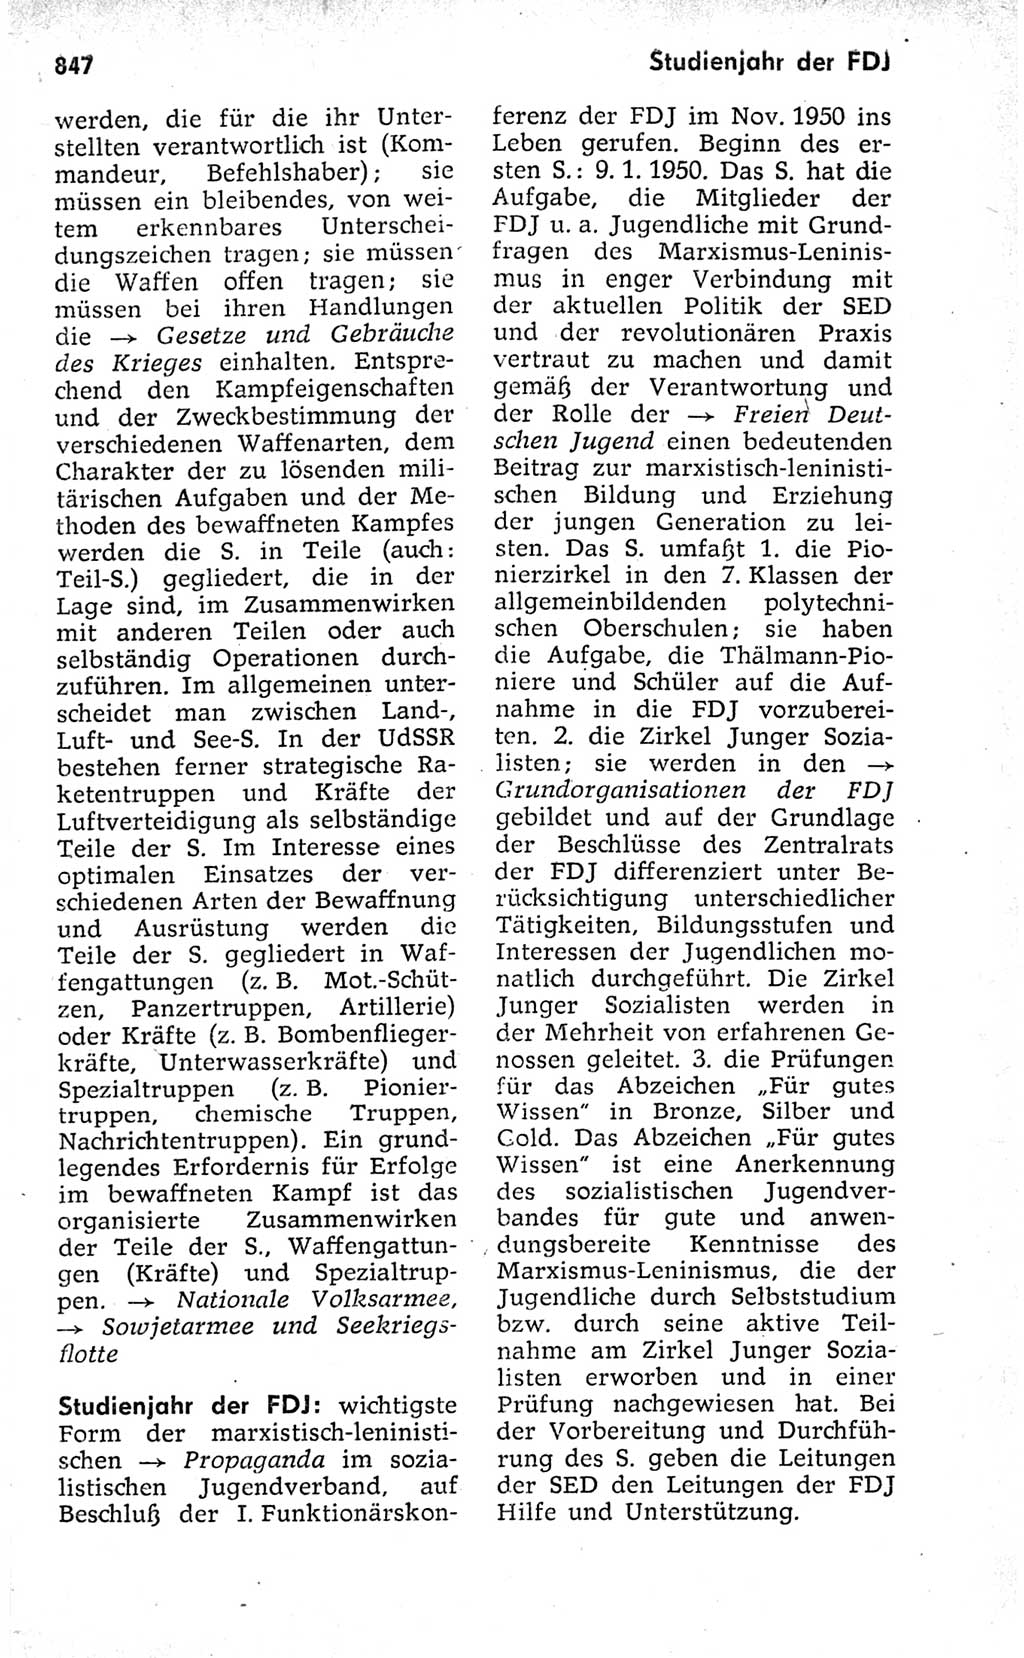 Kleines politisches Wörterbuch [Deutsche Demokratische Republik (DDR)] 1973, Seite 847 (Kl. pol. Wb. DDR 1973, S. 847)